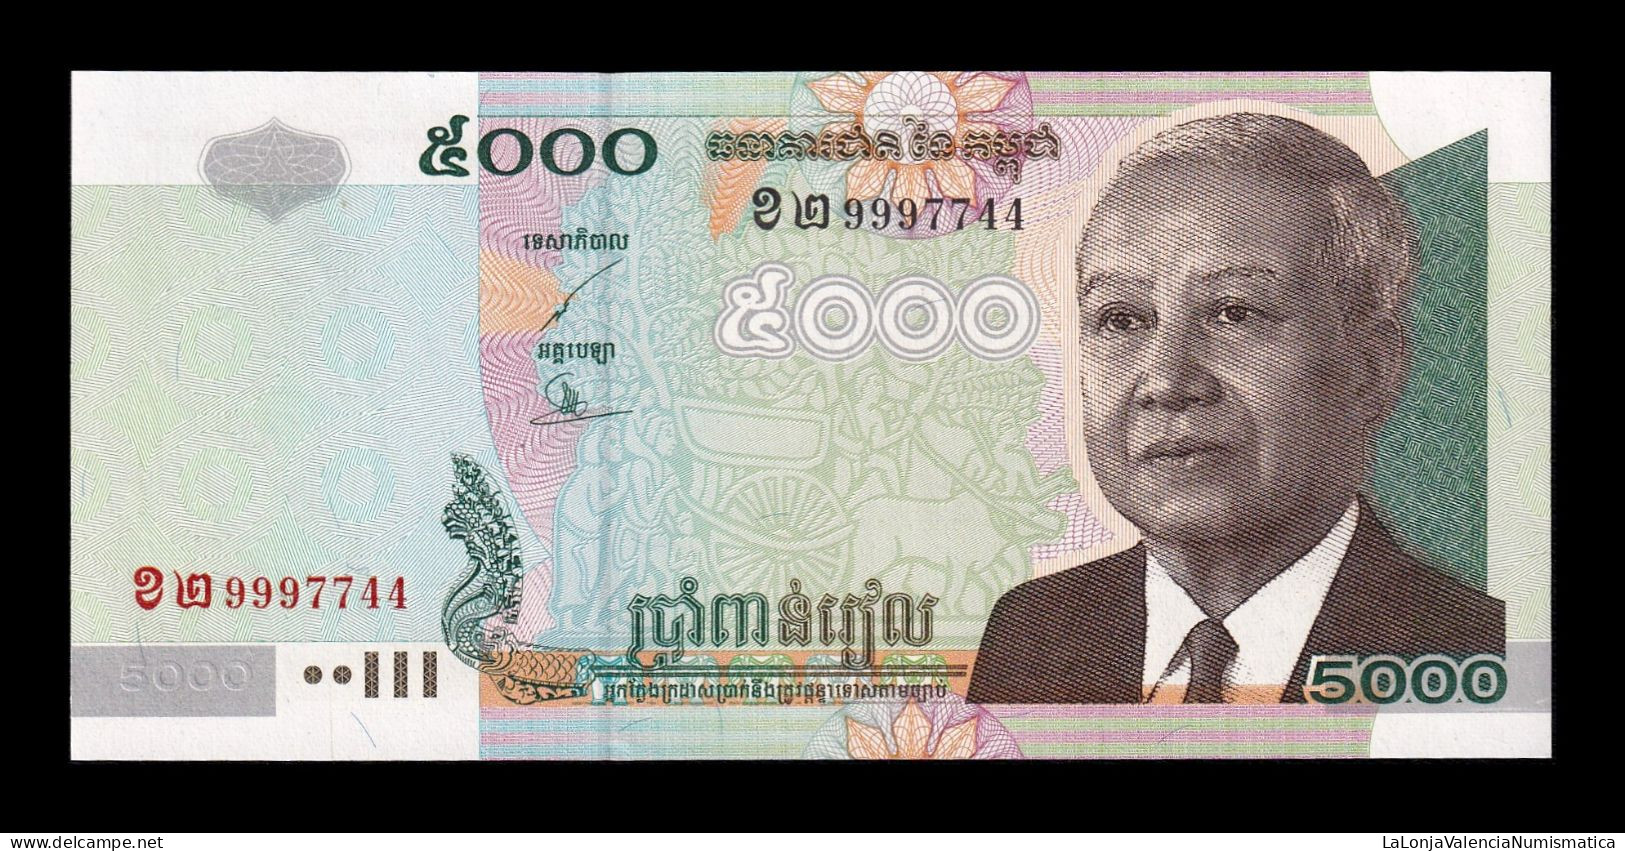 Camboya Cambodia 5000 Riels 2004 Pick 55c Sc Unc - Cambodge